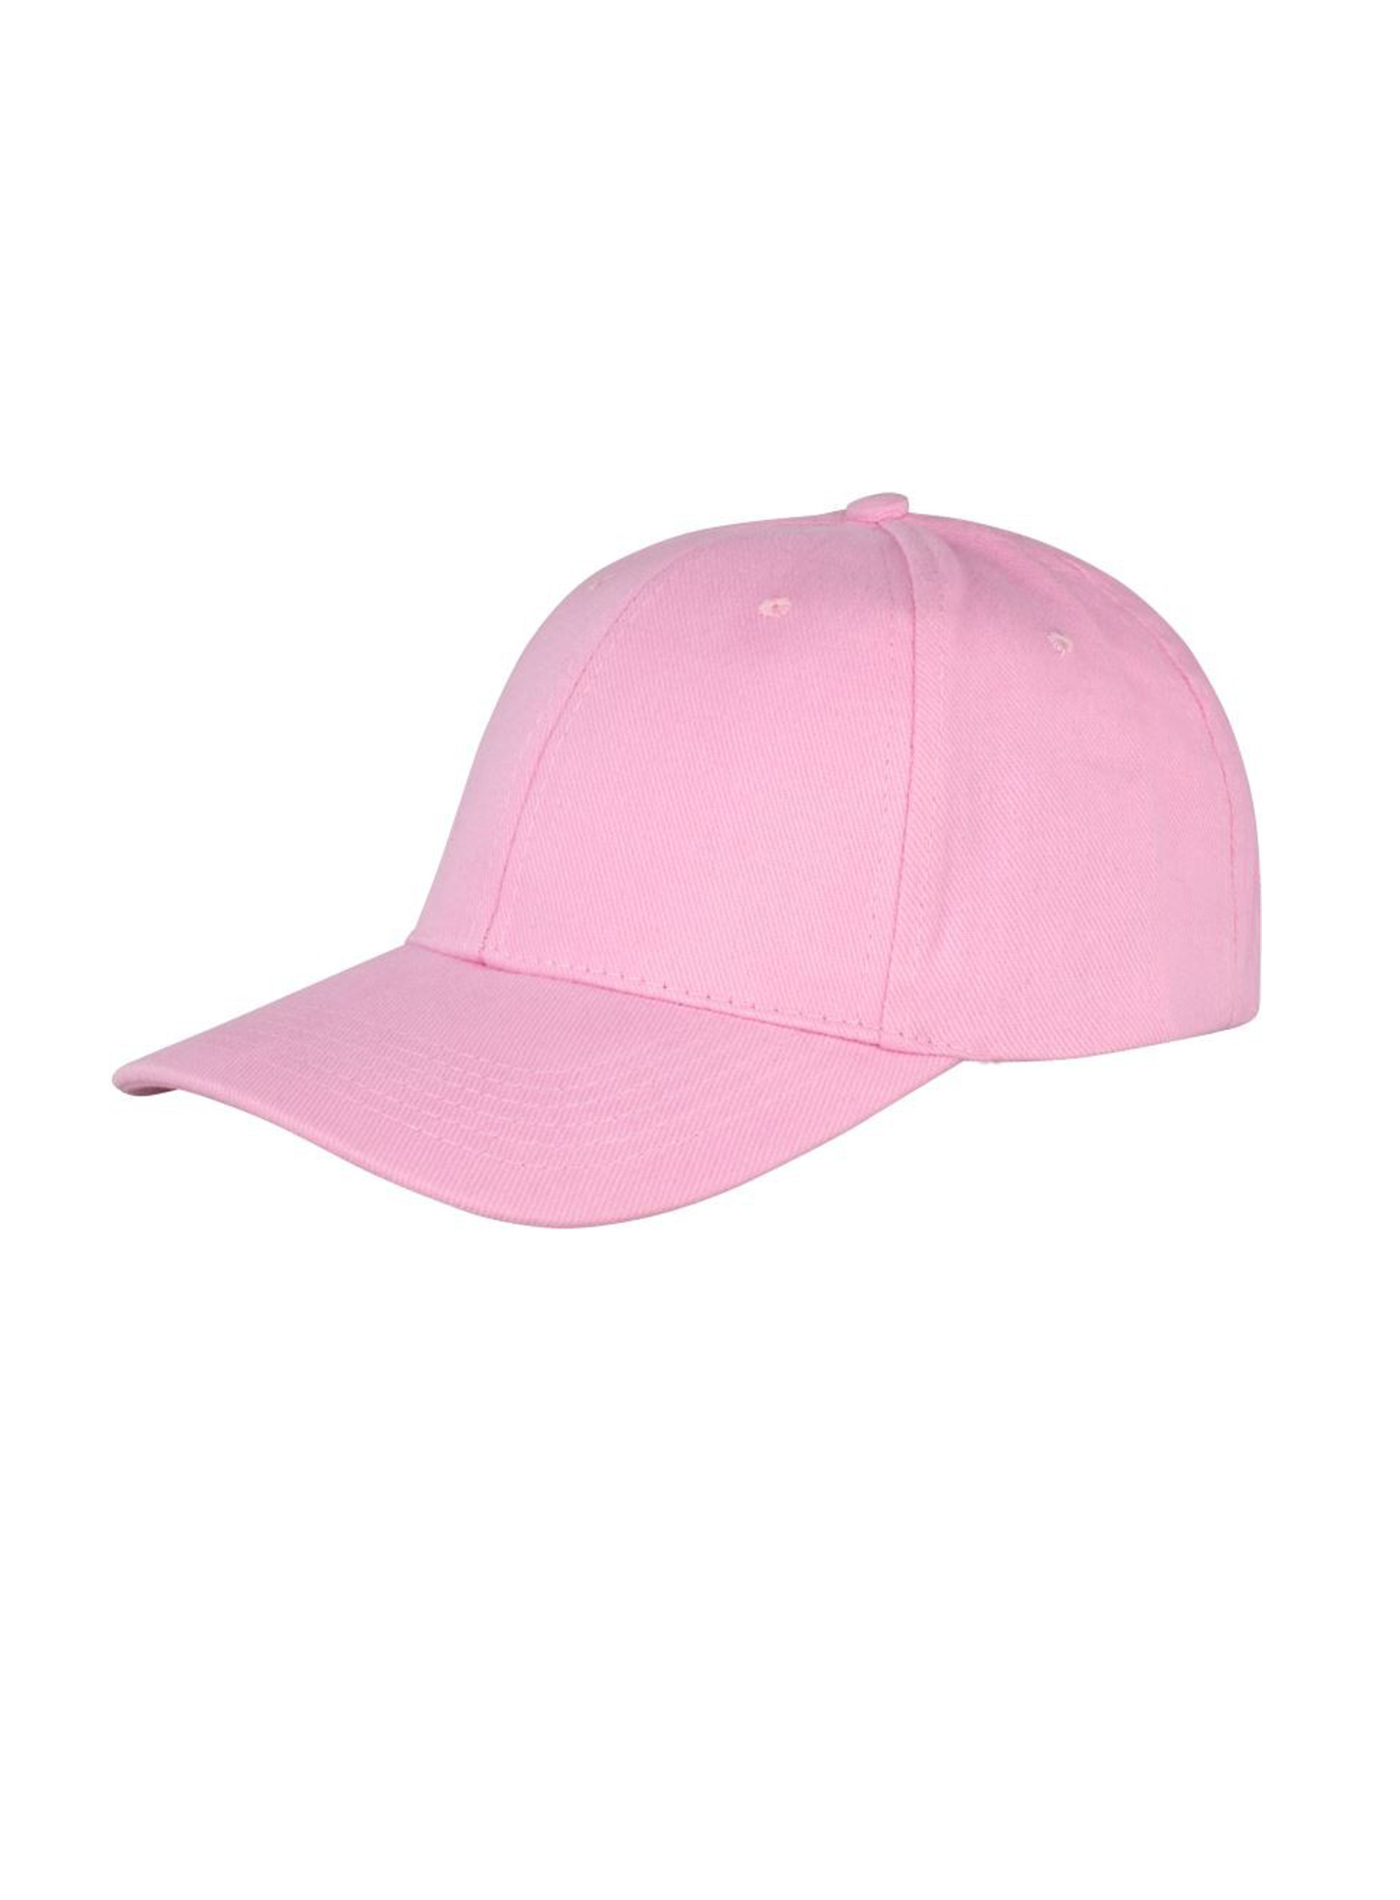 Kšiltovka Result headwear s nízkým profilem - Růžová univerzal